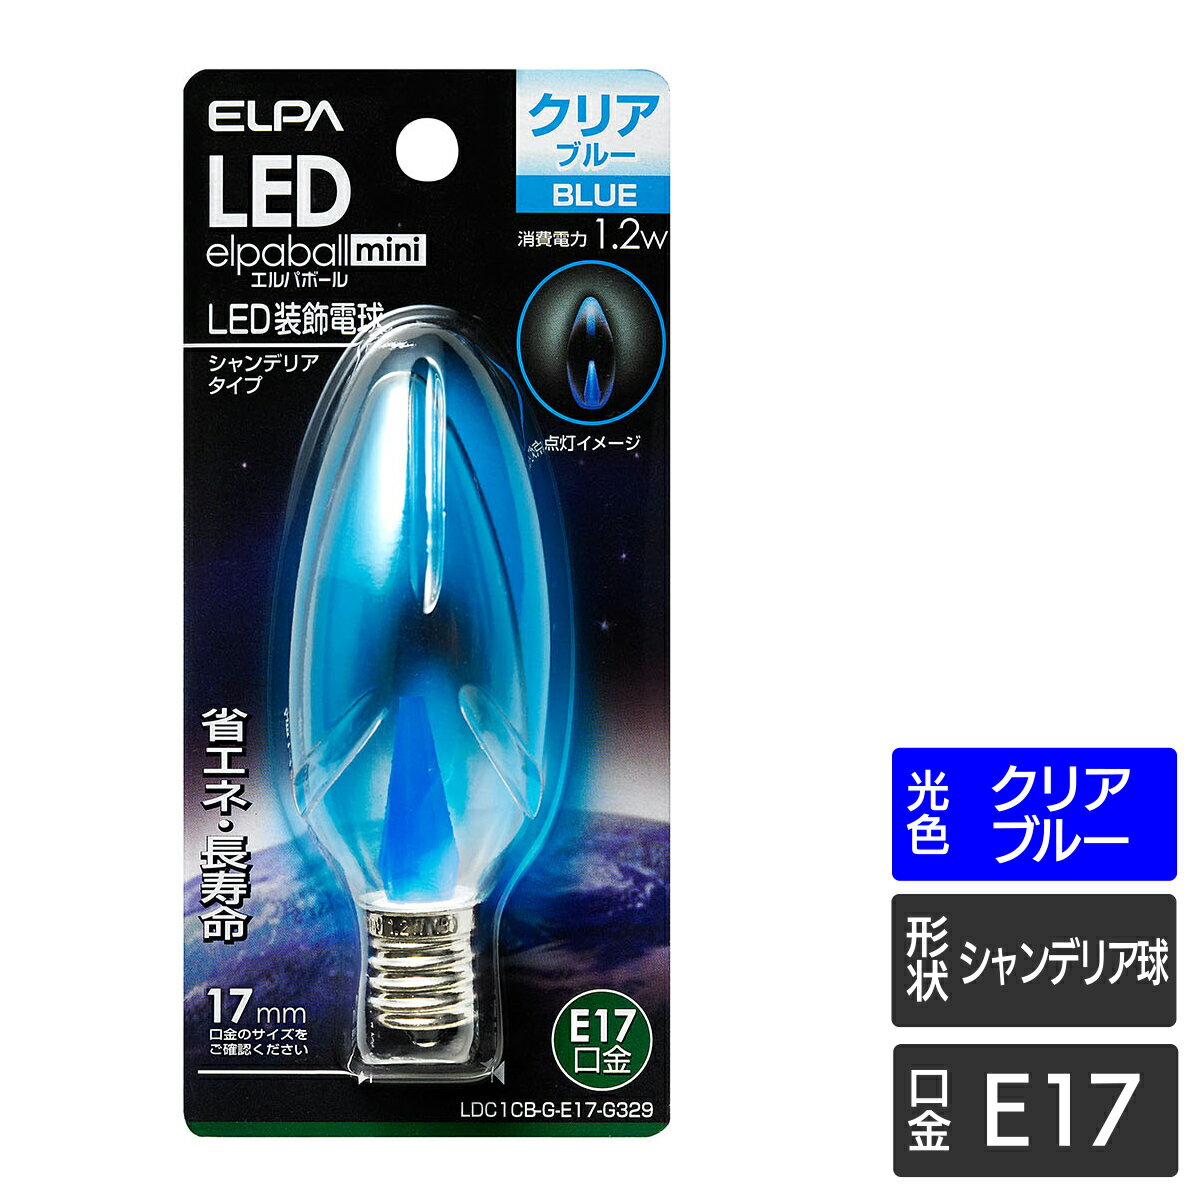 【今だけクーポンあり】エルパ LED装飾電球 シャンデリア球形 E17 クリアブルー LDC1CB-G-E17-G329